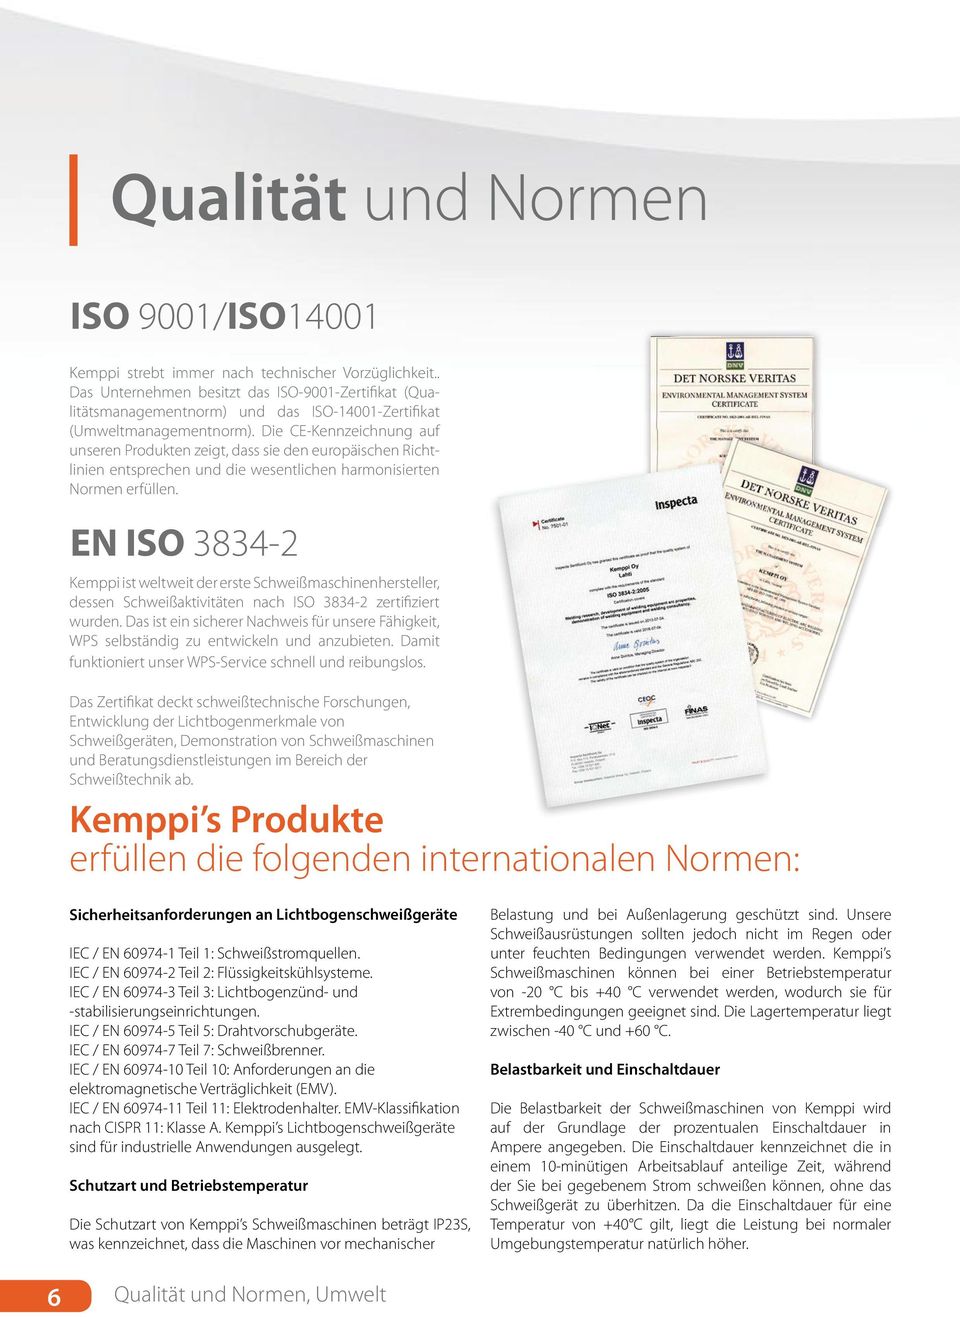 EN ISO 3834-2 Kemppi ist weltweit der erste Schweißmaschinenhersteller, dessen Schweißaktivitäten nach ISO 3834-2 zertifiziert wurden.